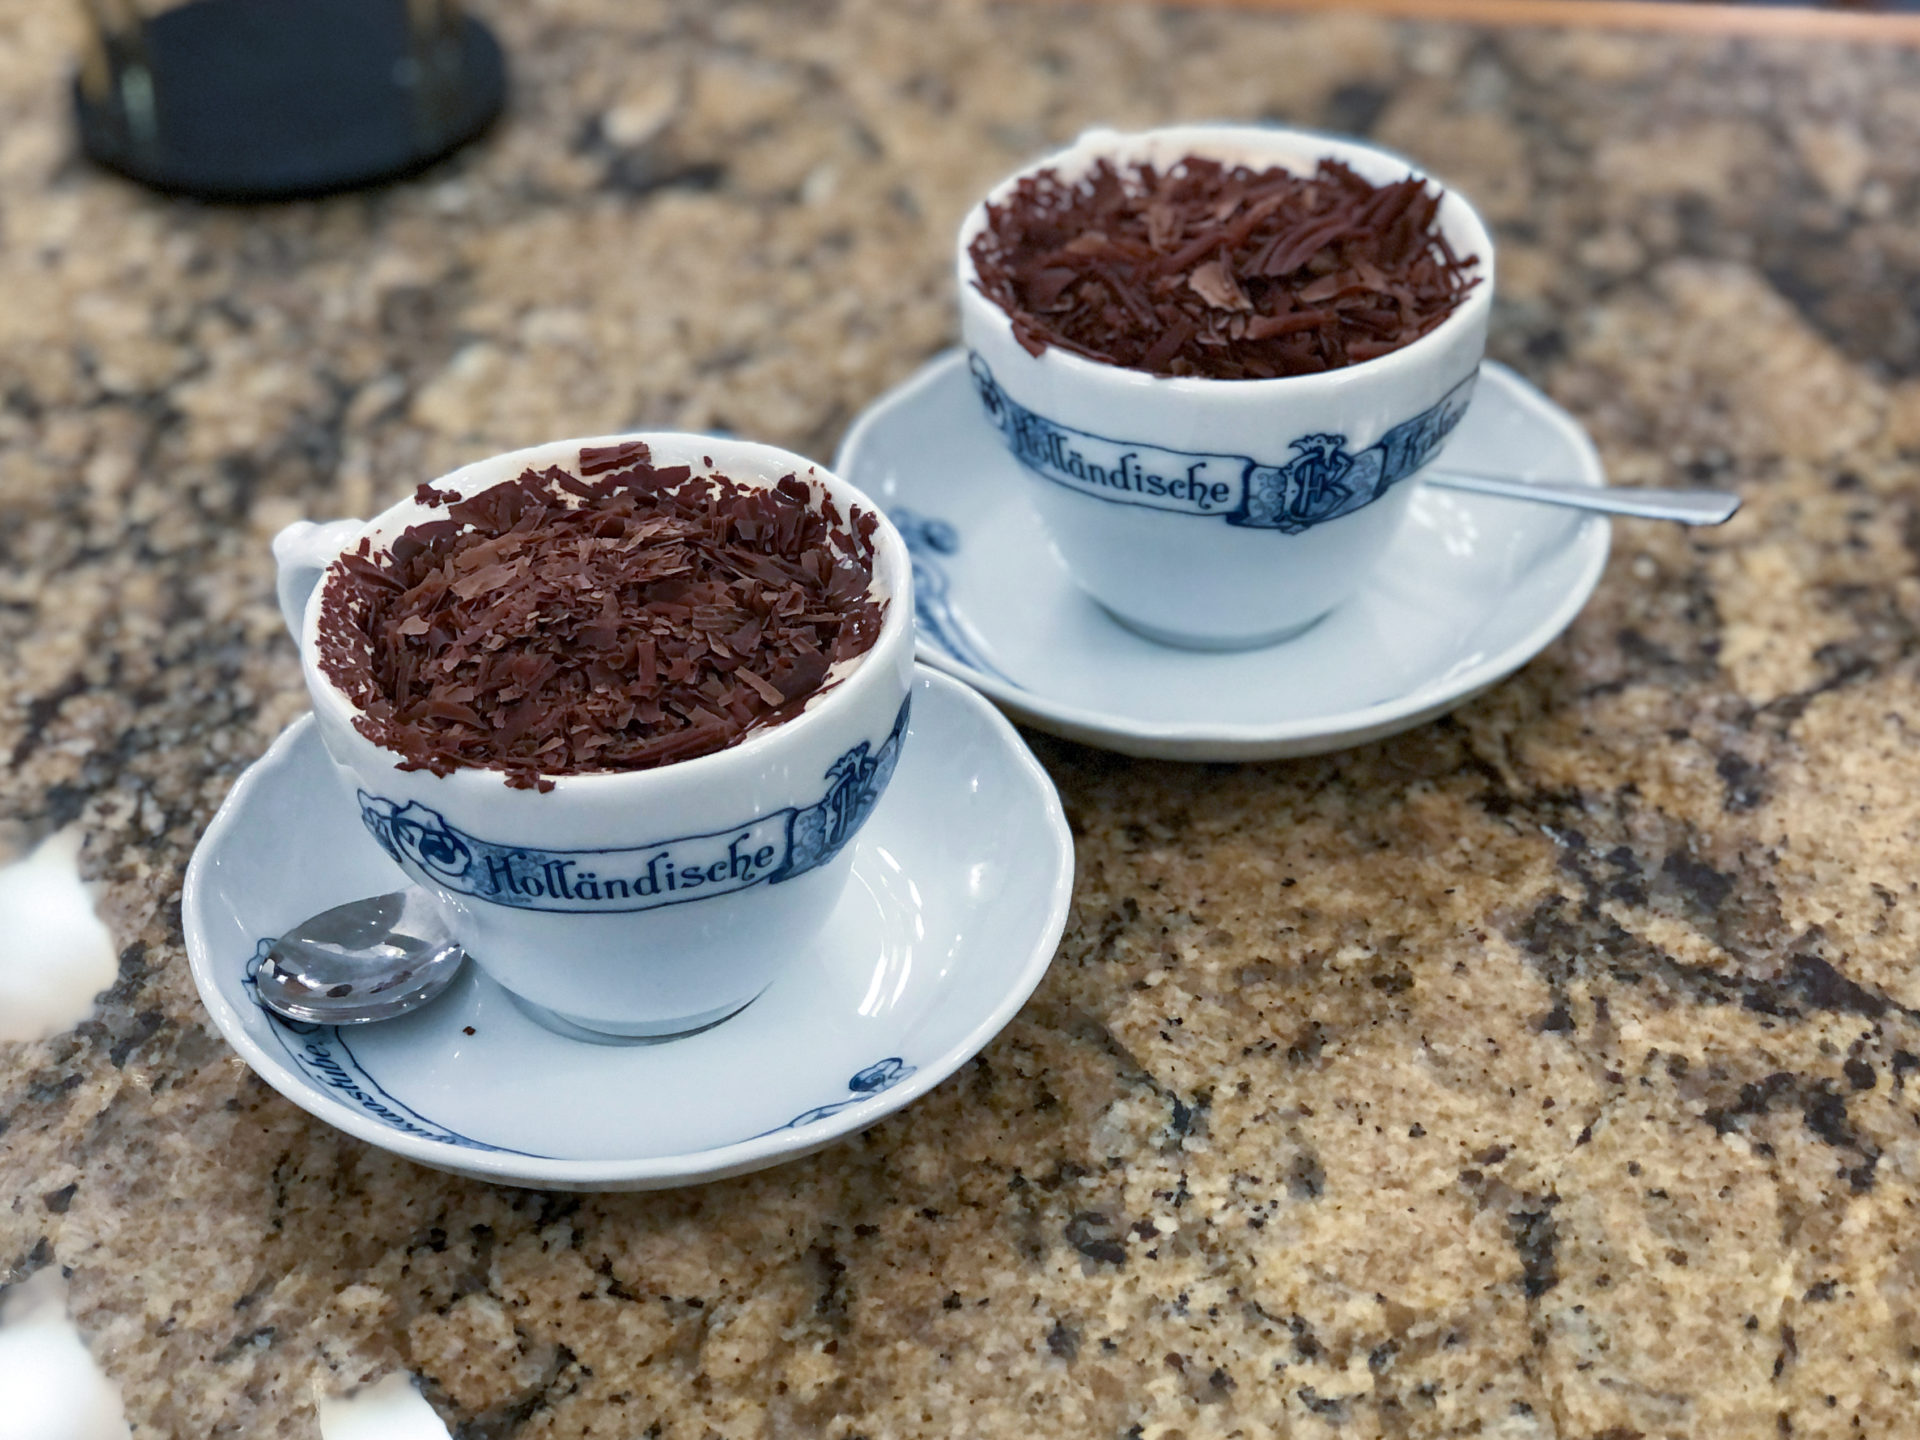 Zwei Tassen heiße Schokolade in der Holländischen Kakaostube in Hannover